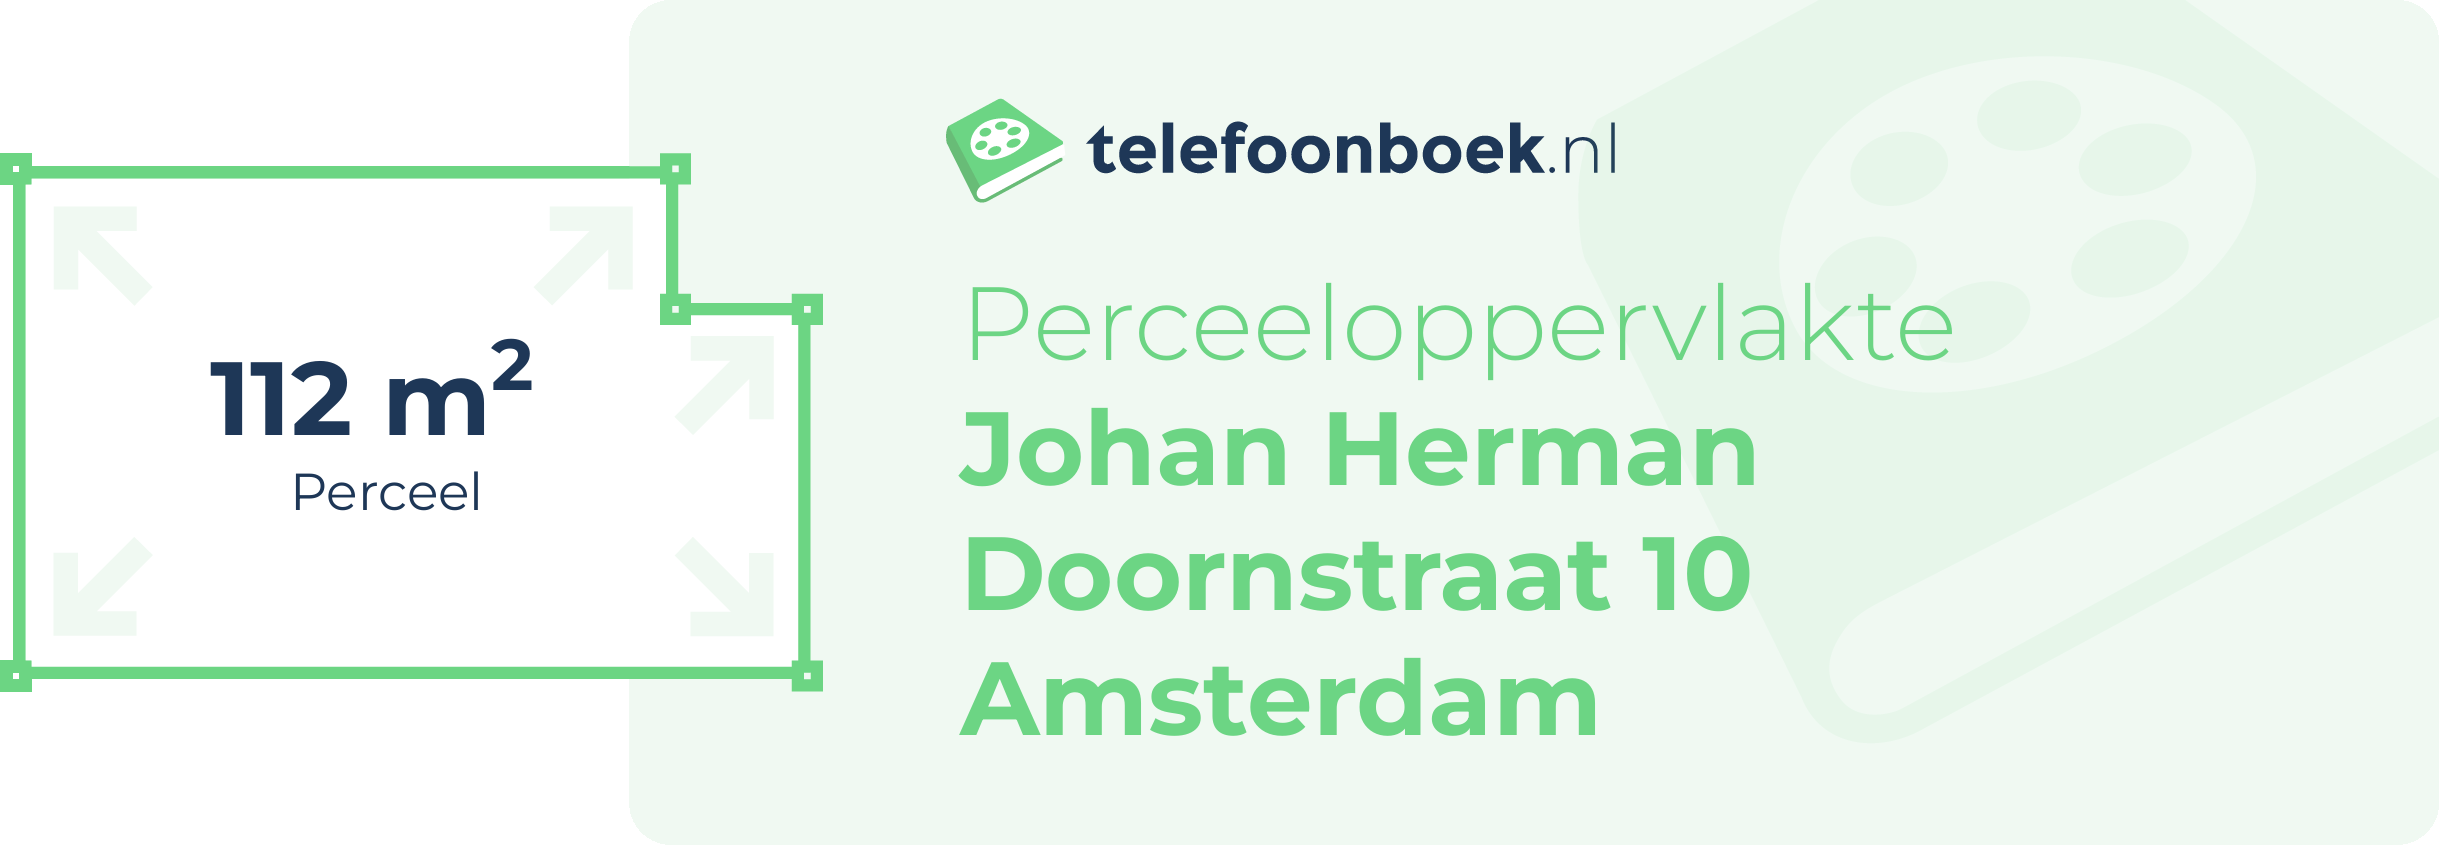 Perceeloppervlakte Johan Herman Doornstraat 10 Amsterdam